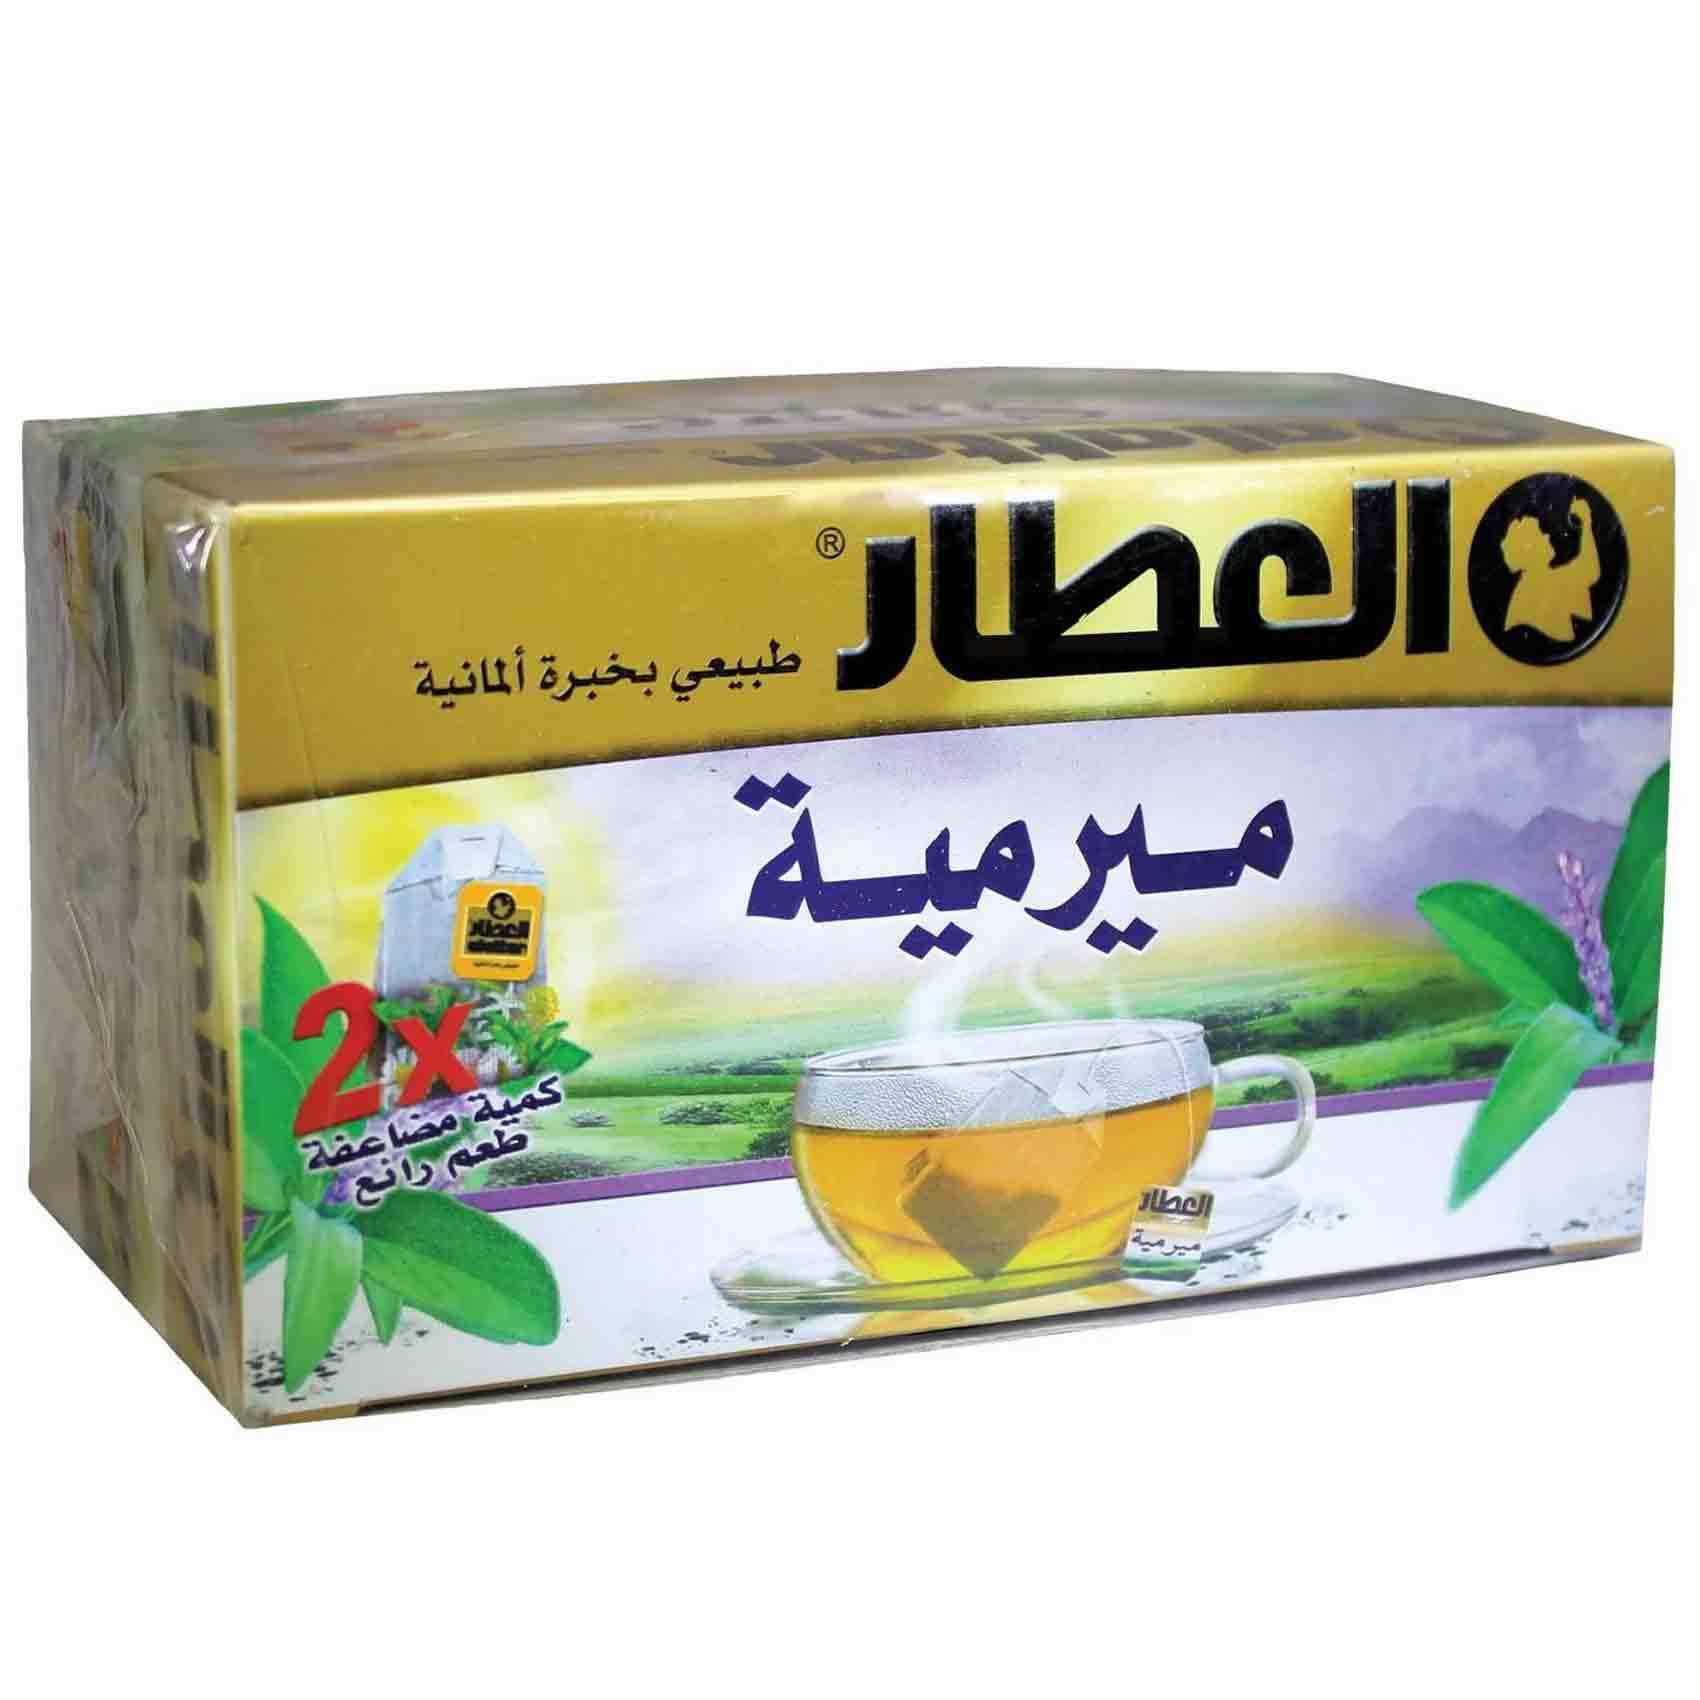 Buy Alattar Tea Miramia Normal 20 Bag Online - Shop Beverages on